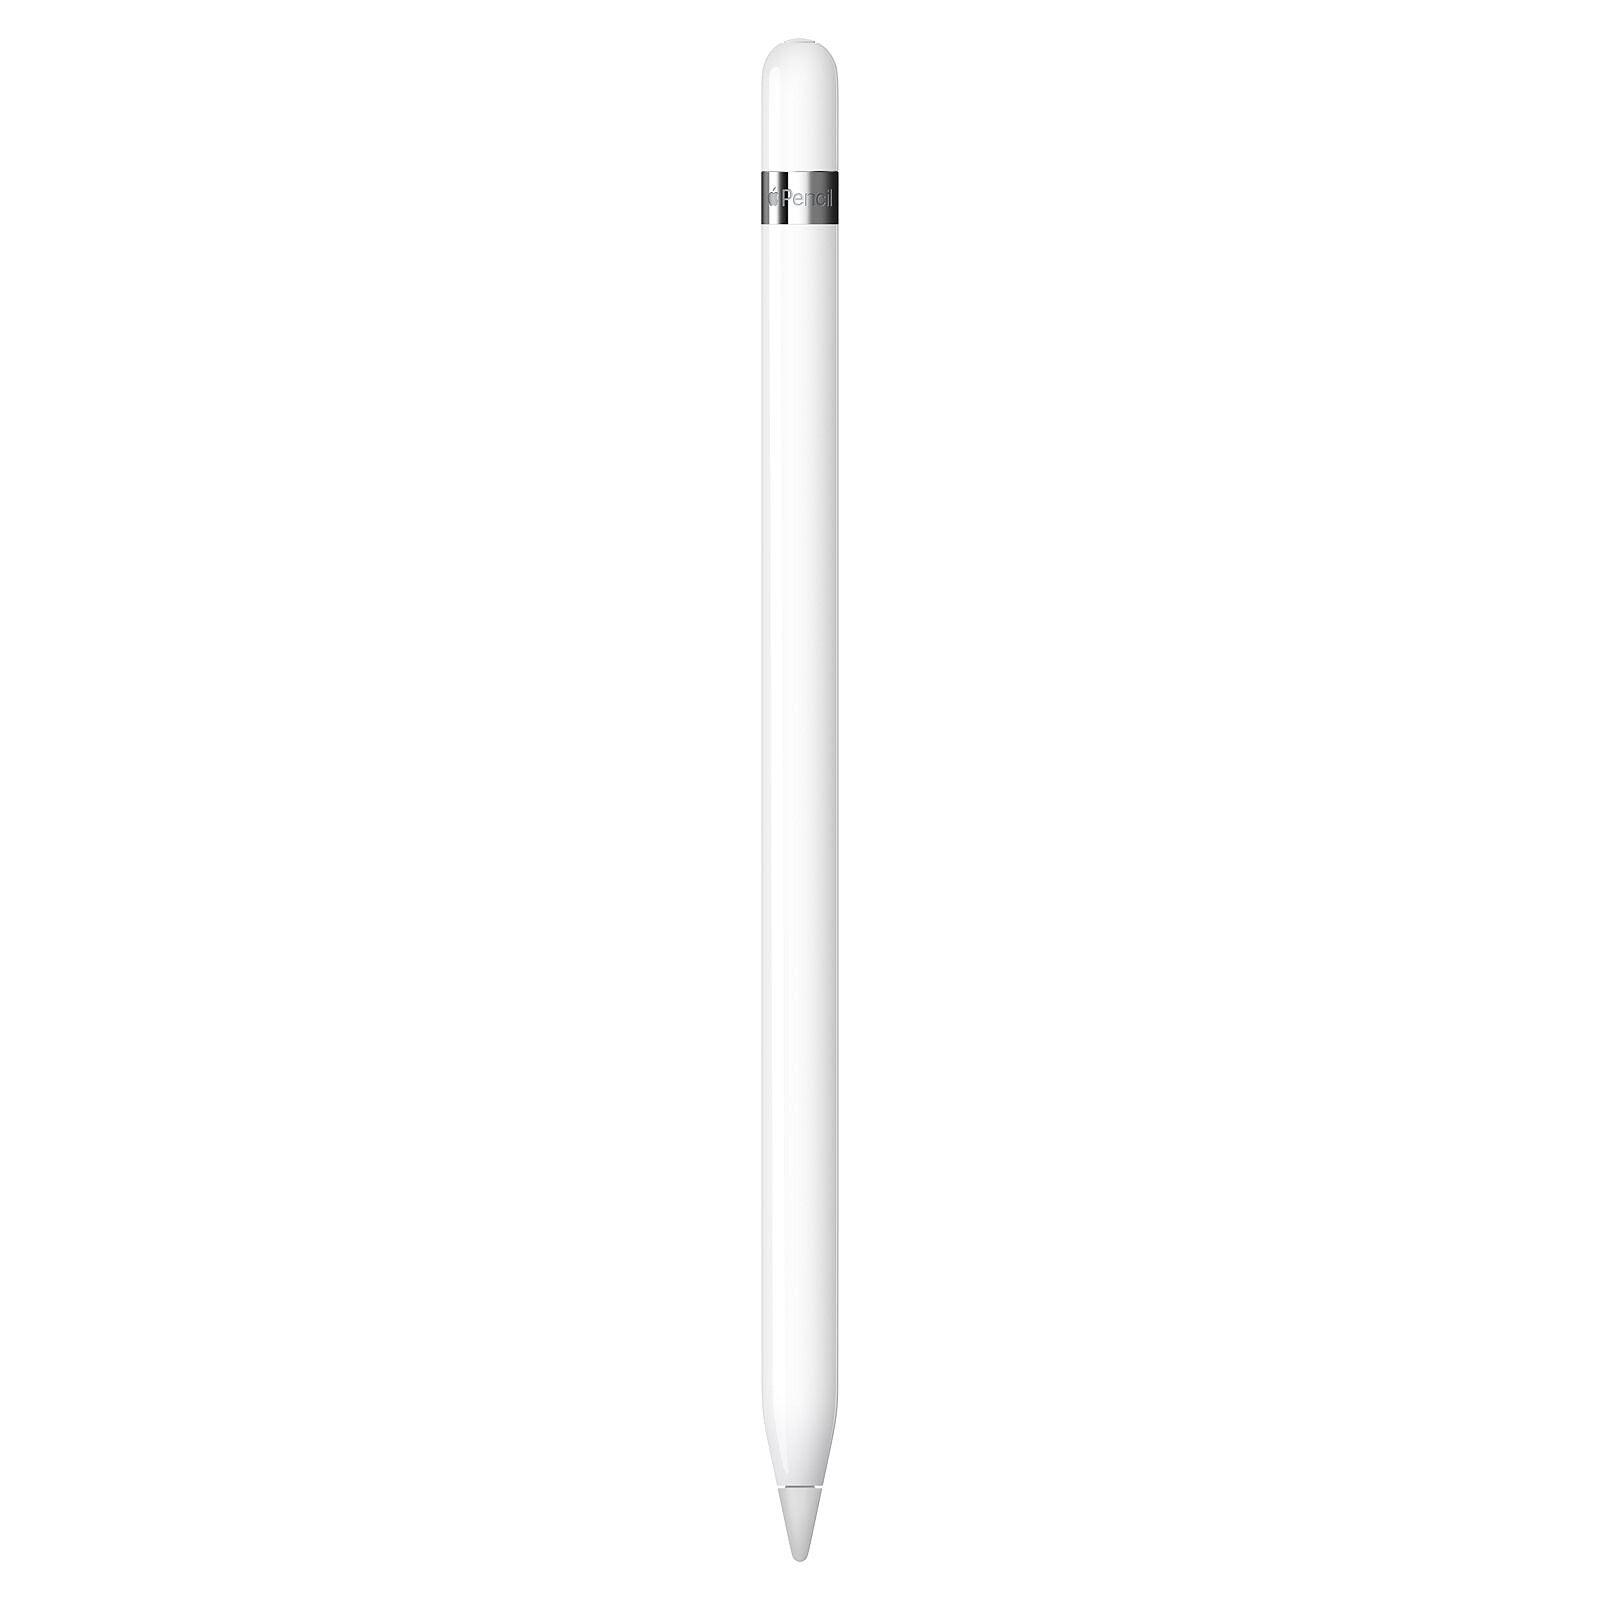 Acheter Embouts pour Apple Pencil 1ère et 2ème génération, pointe